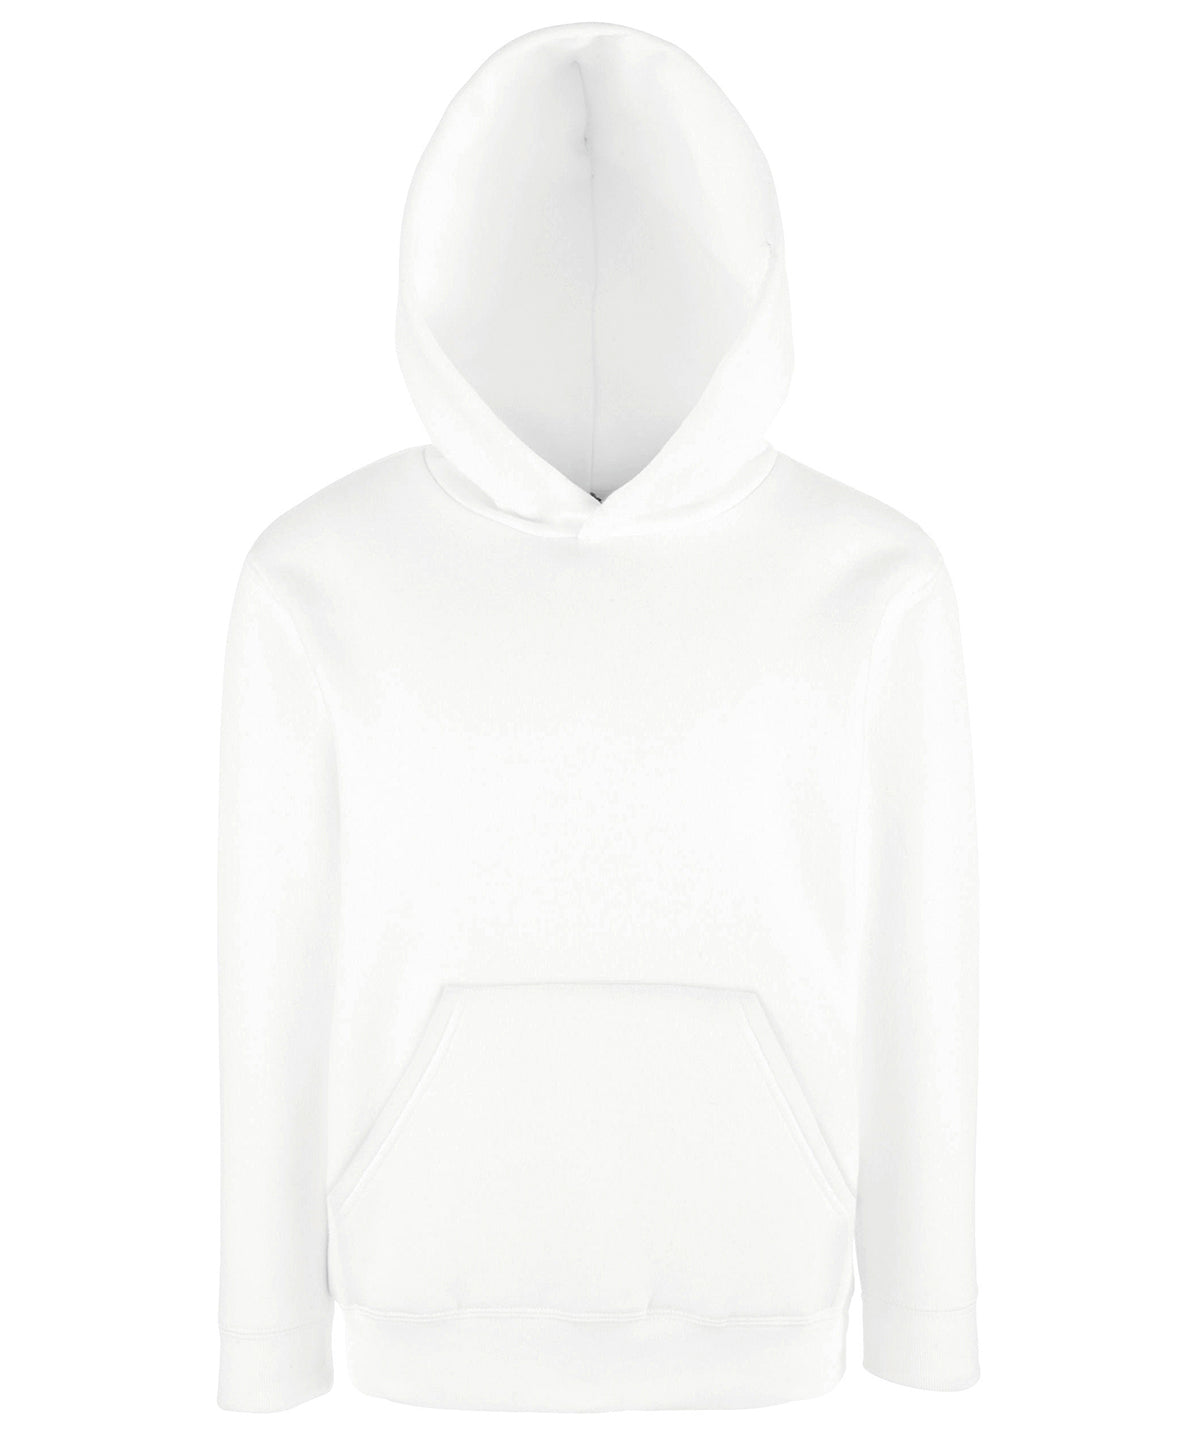 White - Kids classic hooded sweatshirt Hoodies Fruit of the Loom Home of the hoodie, Hoodies, Junior, Must Haves Schoolwear Centres